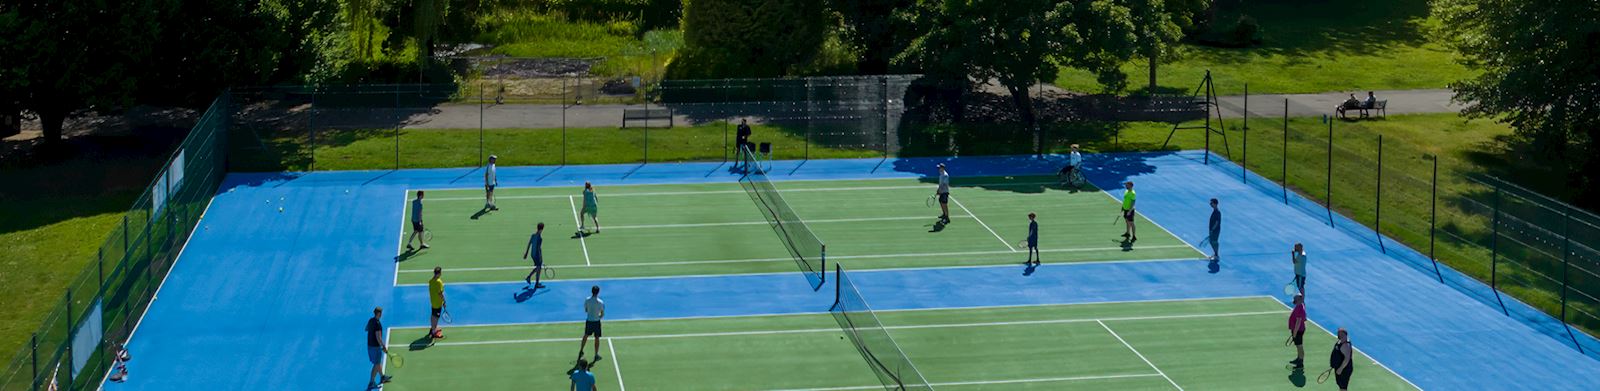 Newlands Park Community Tennis Centre (NPCTC)